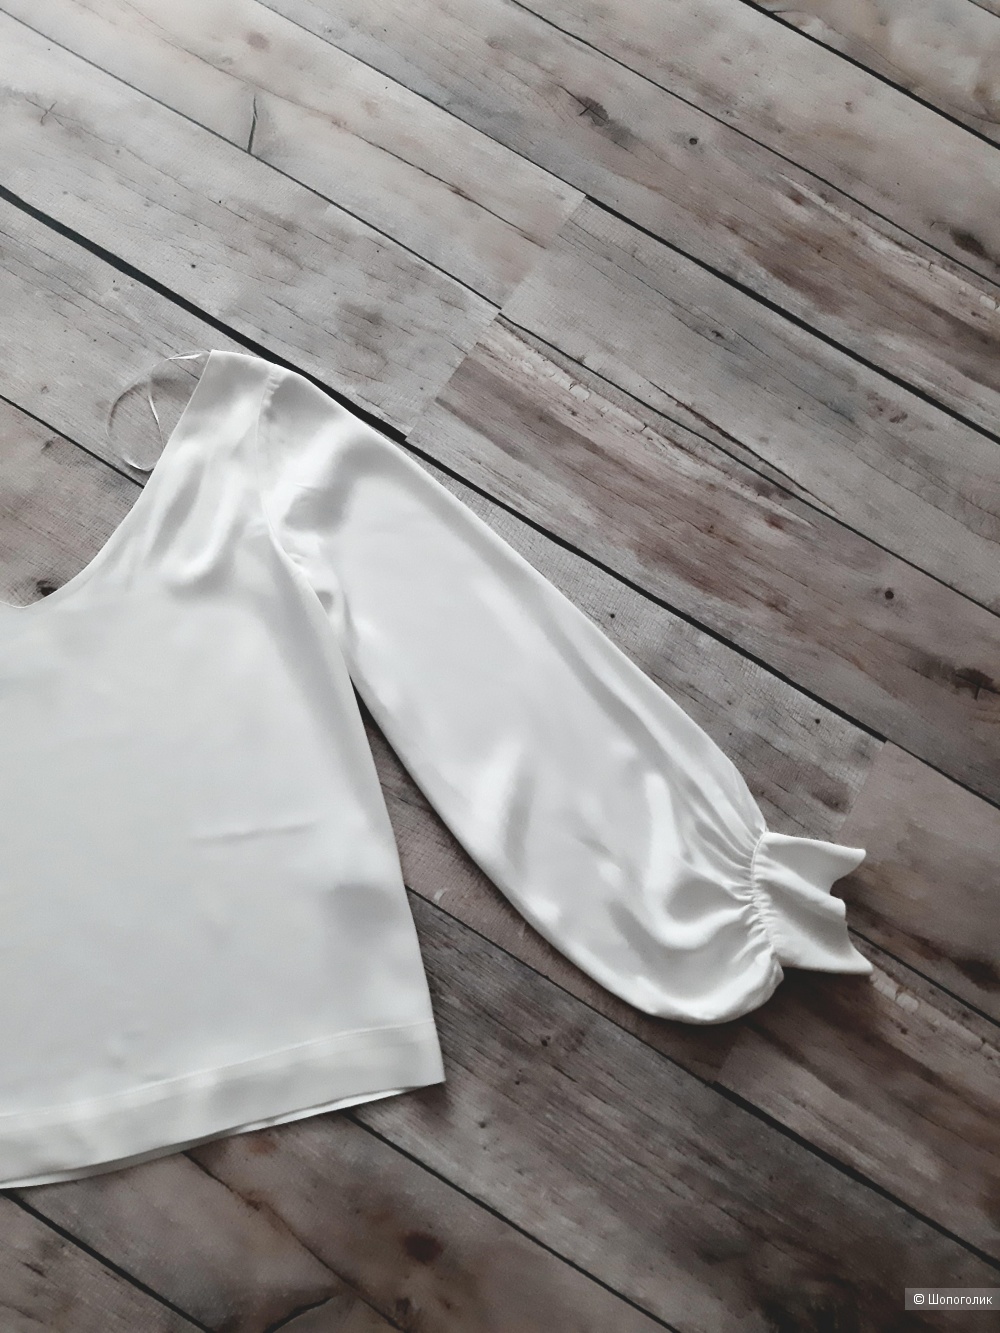 Блузка Uterque, размер S